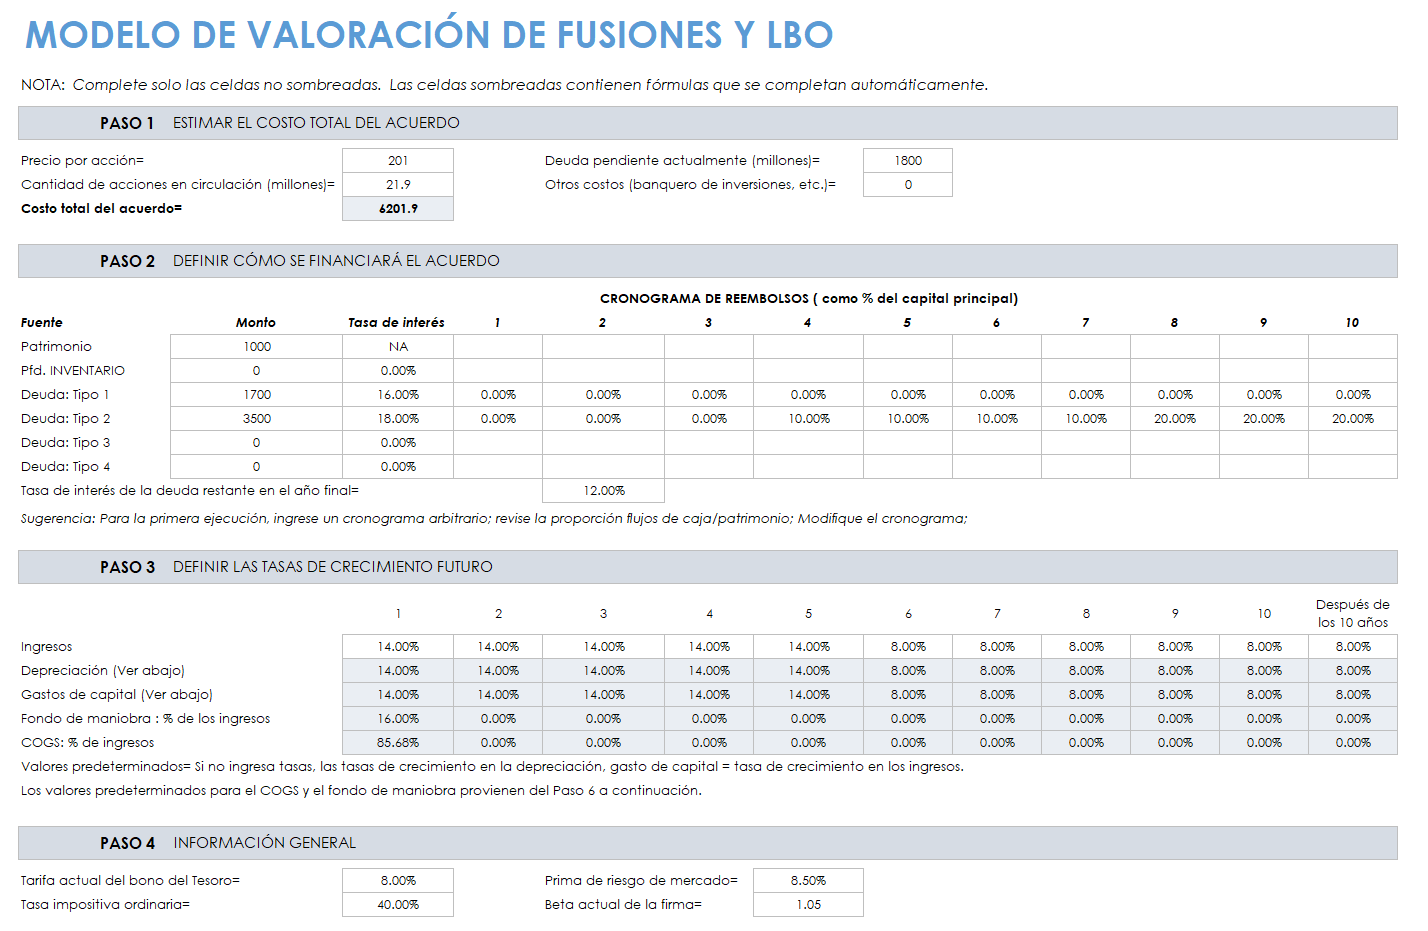 Modelo de valoración de fusiones MA y LBO